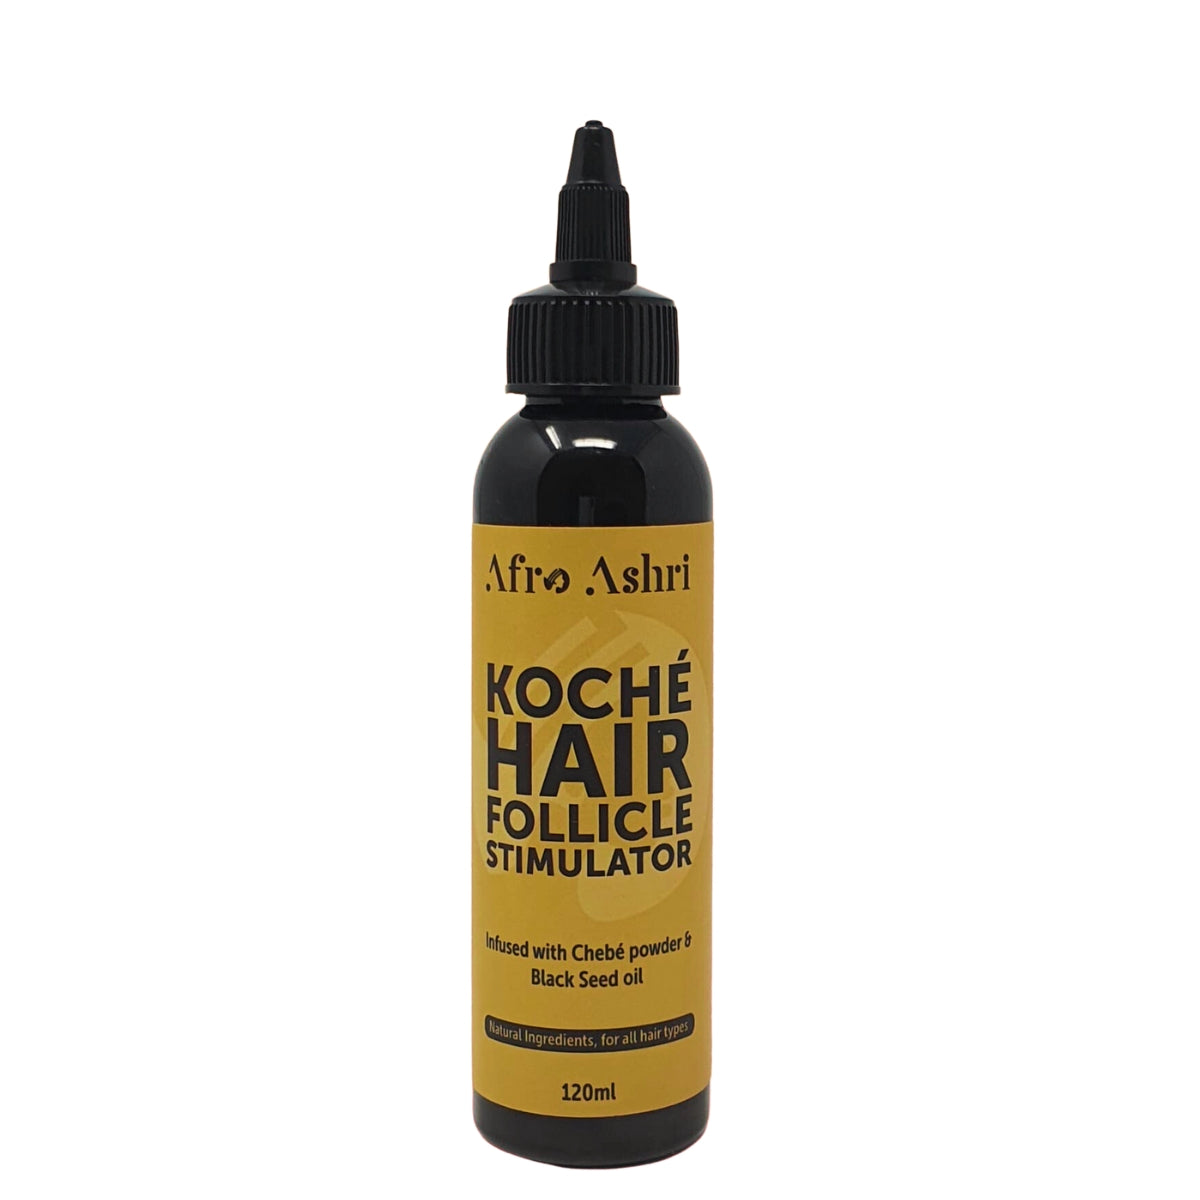 Koché Hair Follicle Stimulator est l'activateur de pousse de la marque Afro Ashri. Formulé pour favoriser une croissance saine et rapide des cheveux. 100% naturel.